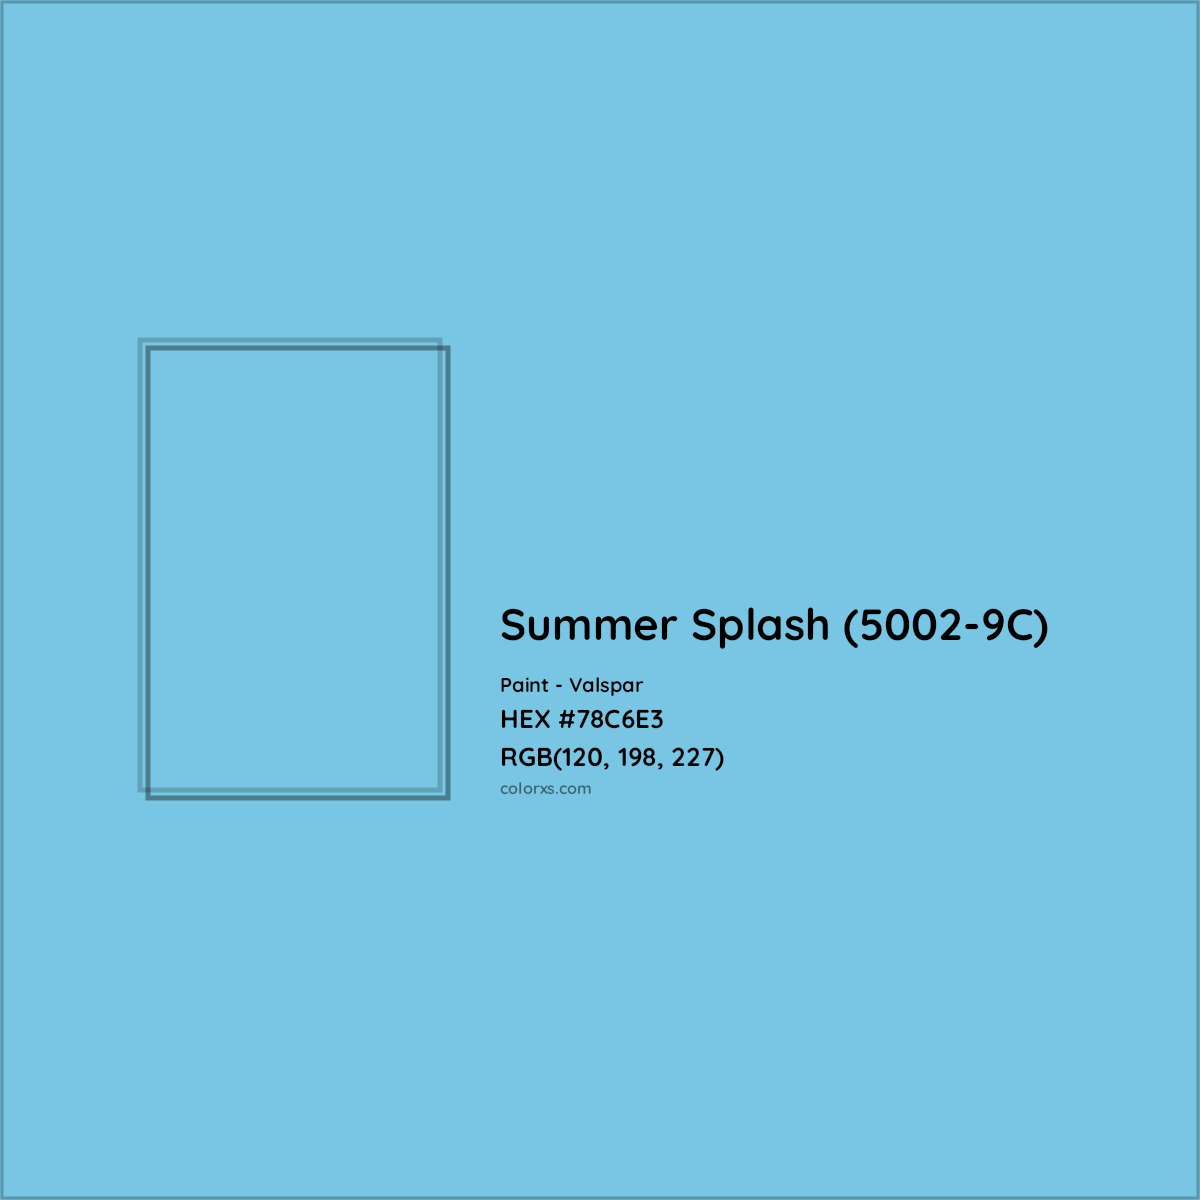 HEX #78C6E3 Summer Splash (5002-9C) Paint Valspar - Color Code